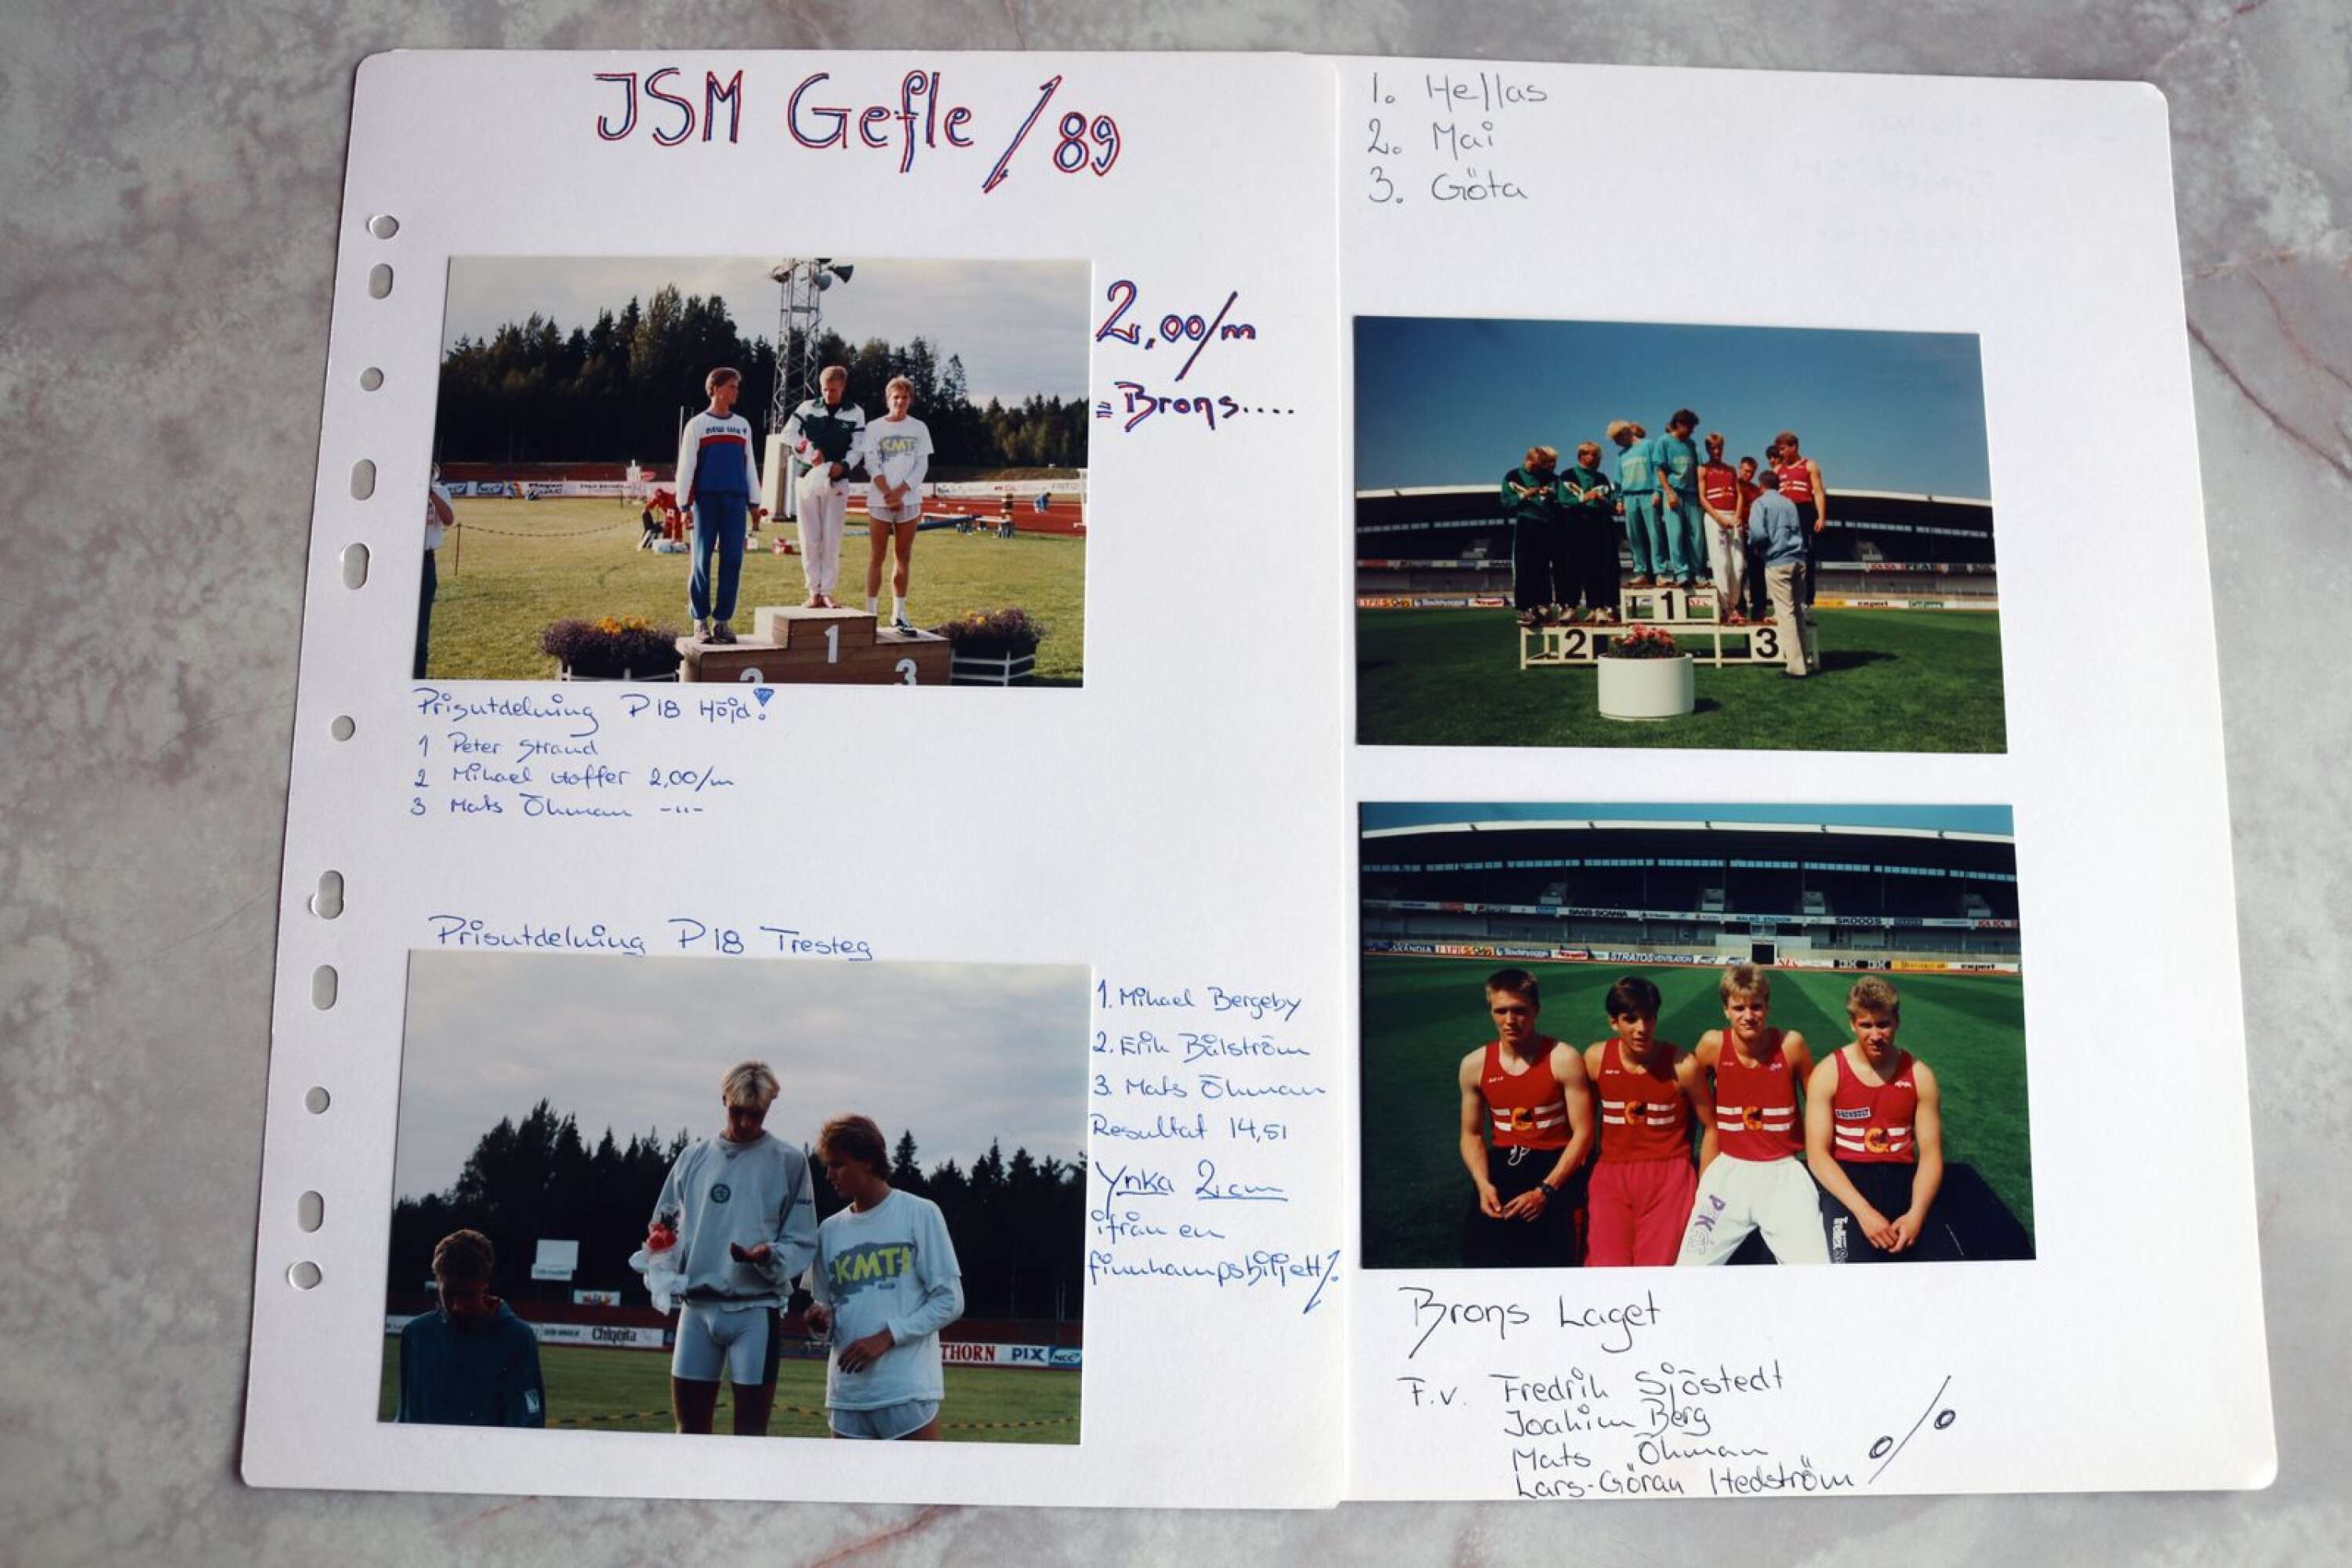 JSM 1989 innebar höjdpunkten för Mats Öman som friidrottare med tre brons.